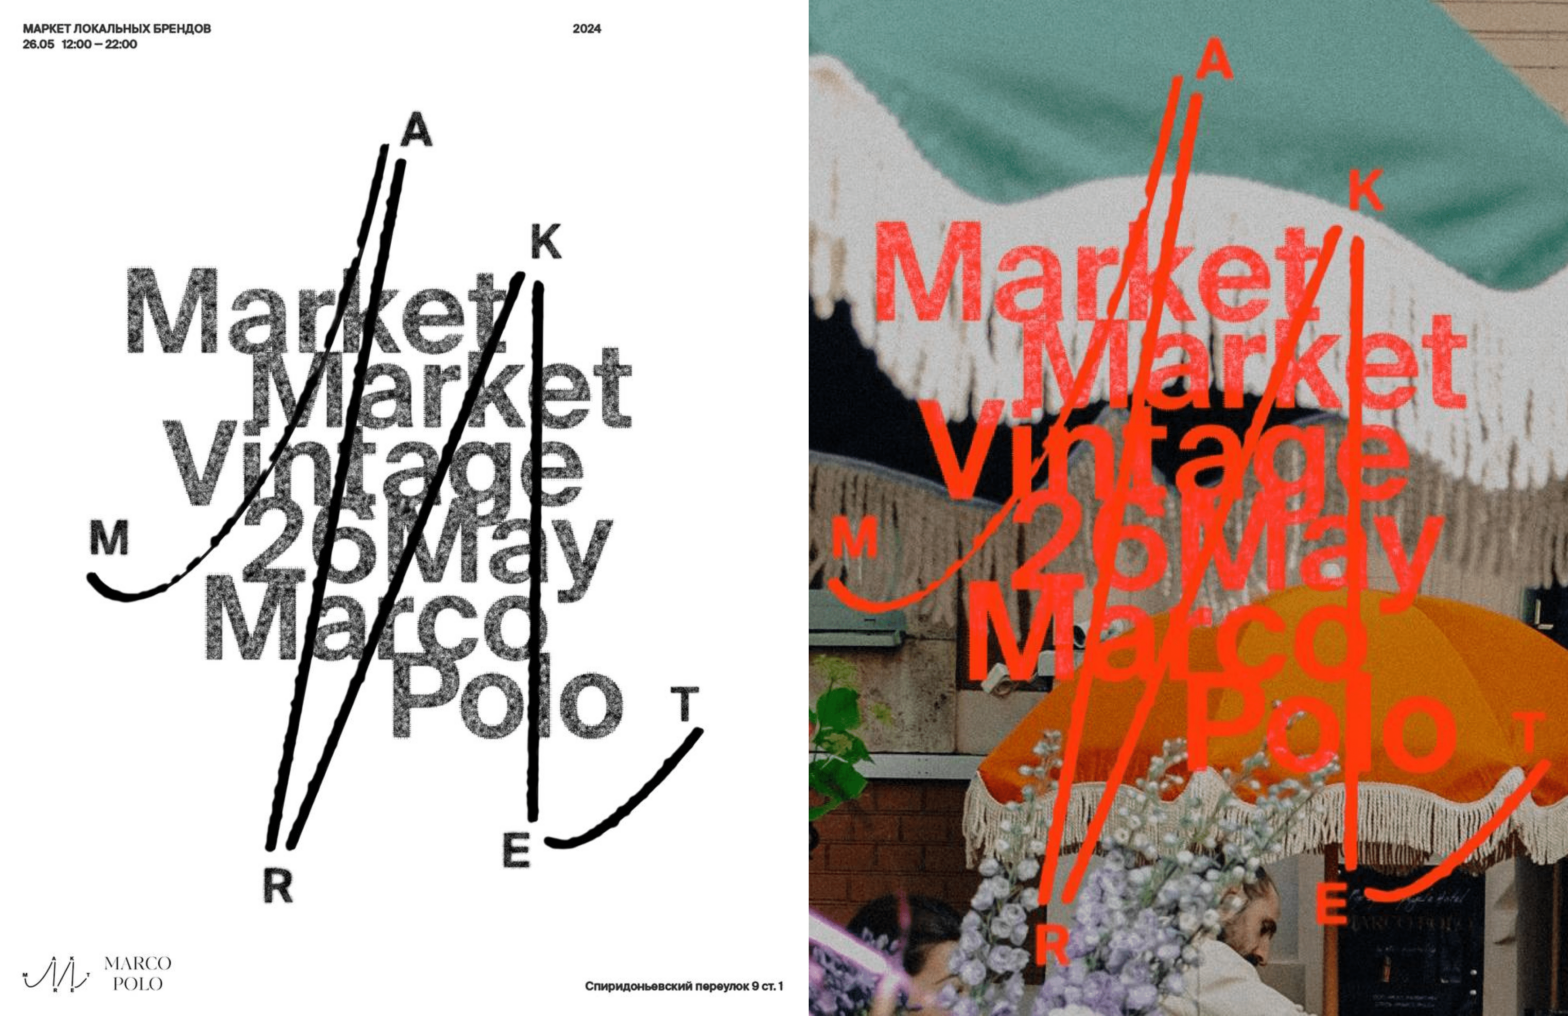 26 мая в отеле Marco Polo пройдет винтажный маркет MarketMarket